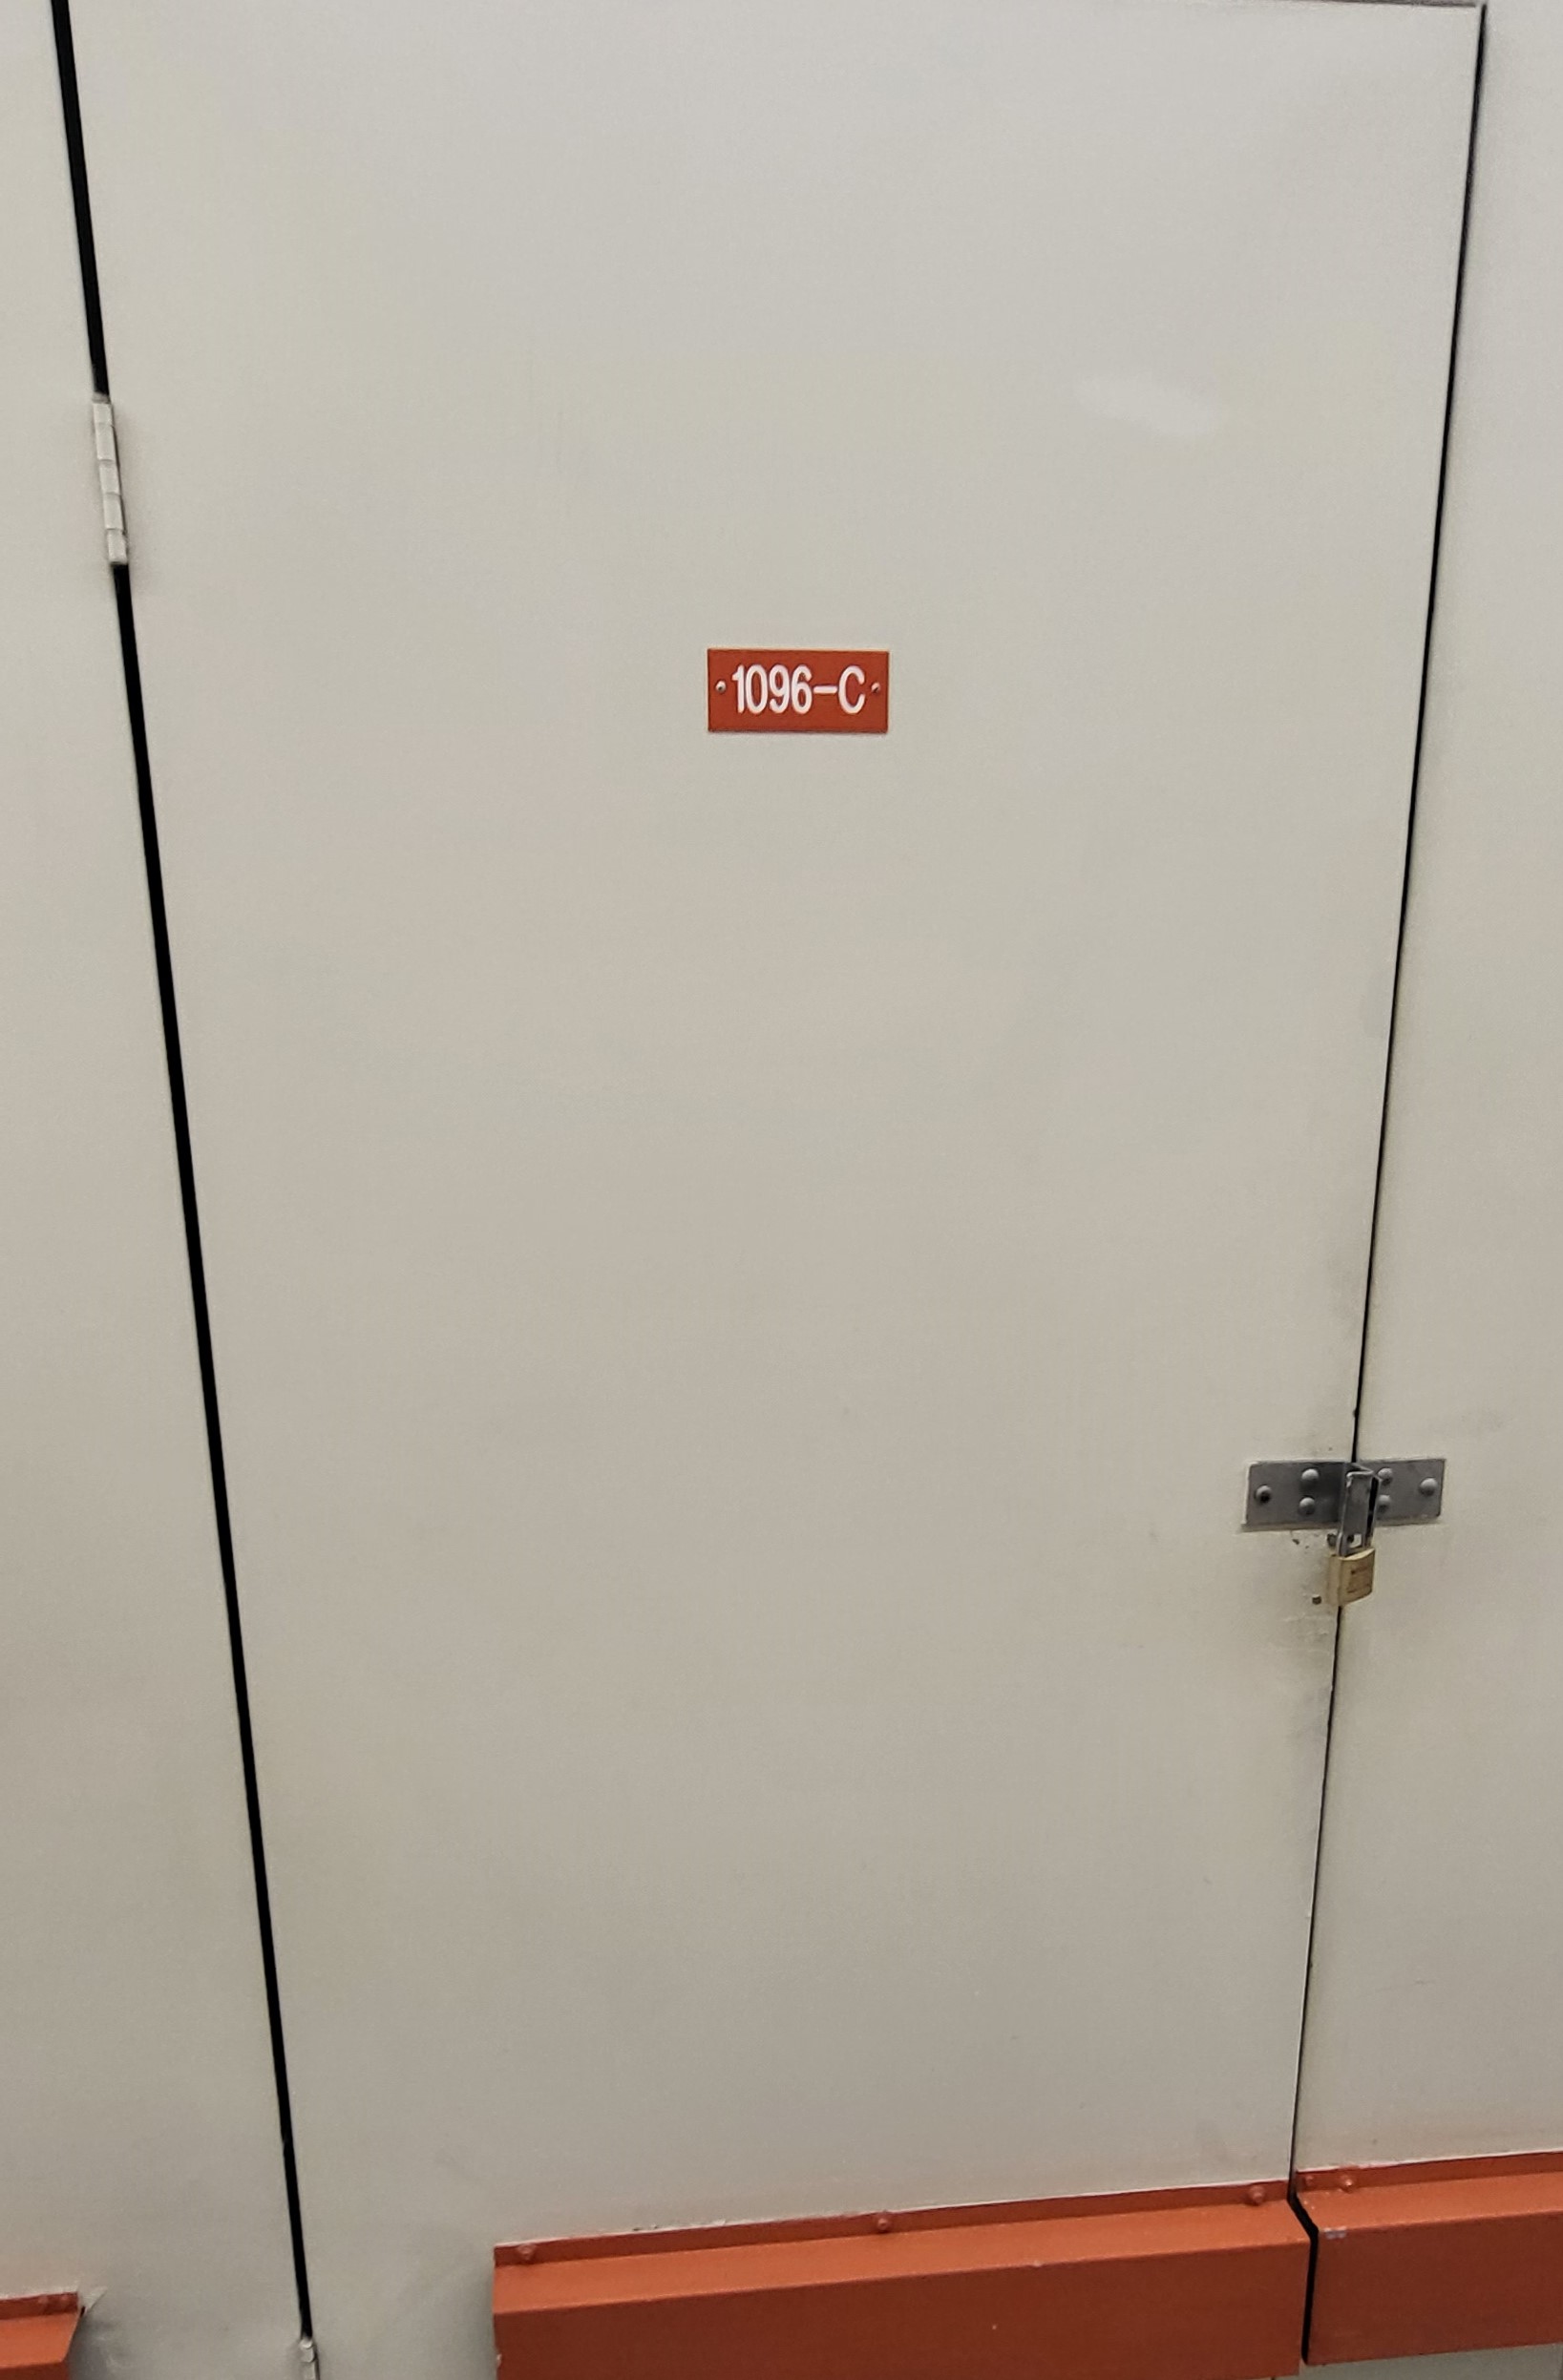 WF Halls Storage Unit Door